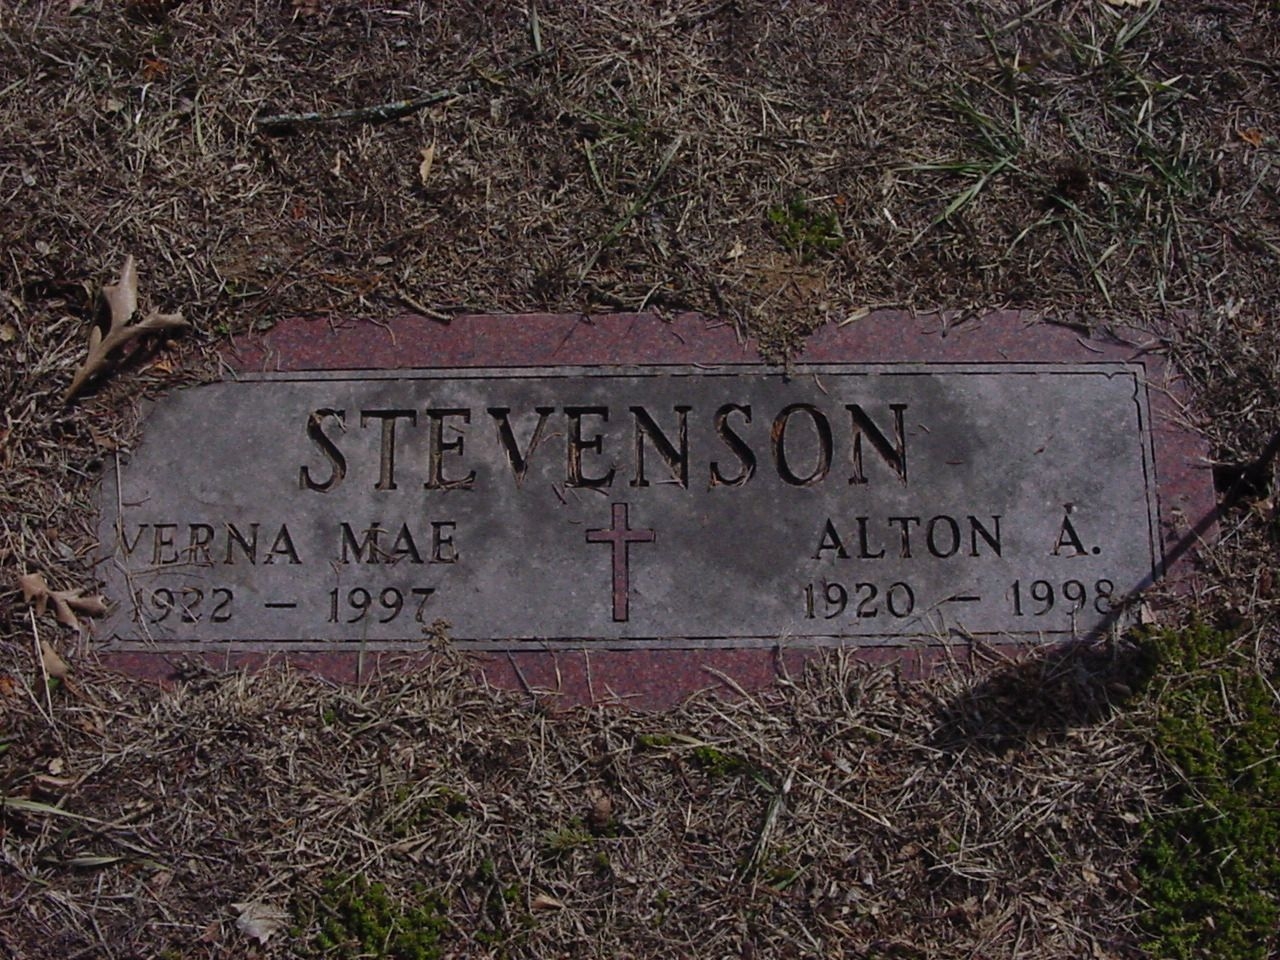 Alton A & Verna Mae Stevenson gravesite